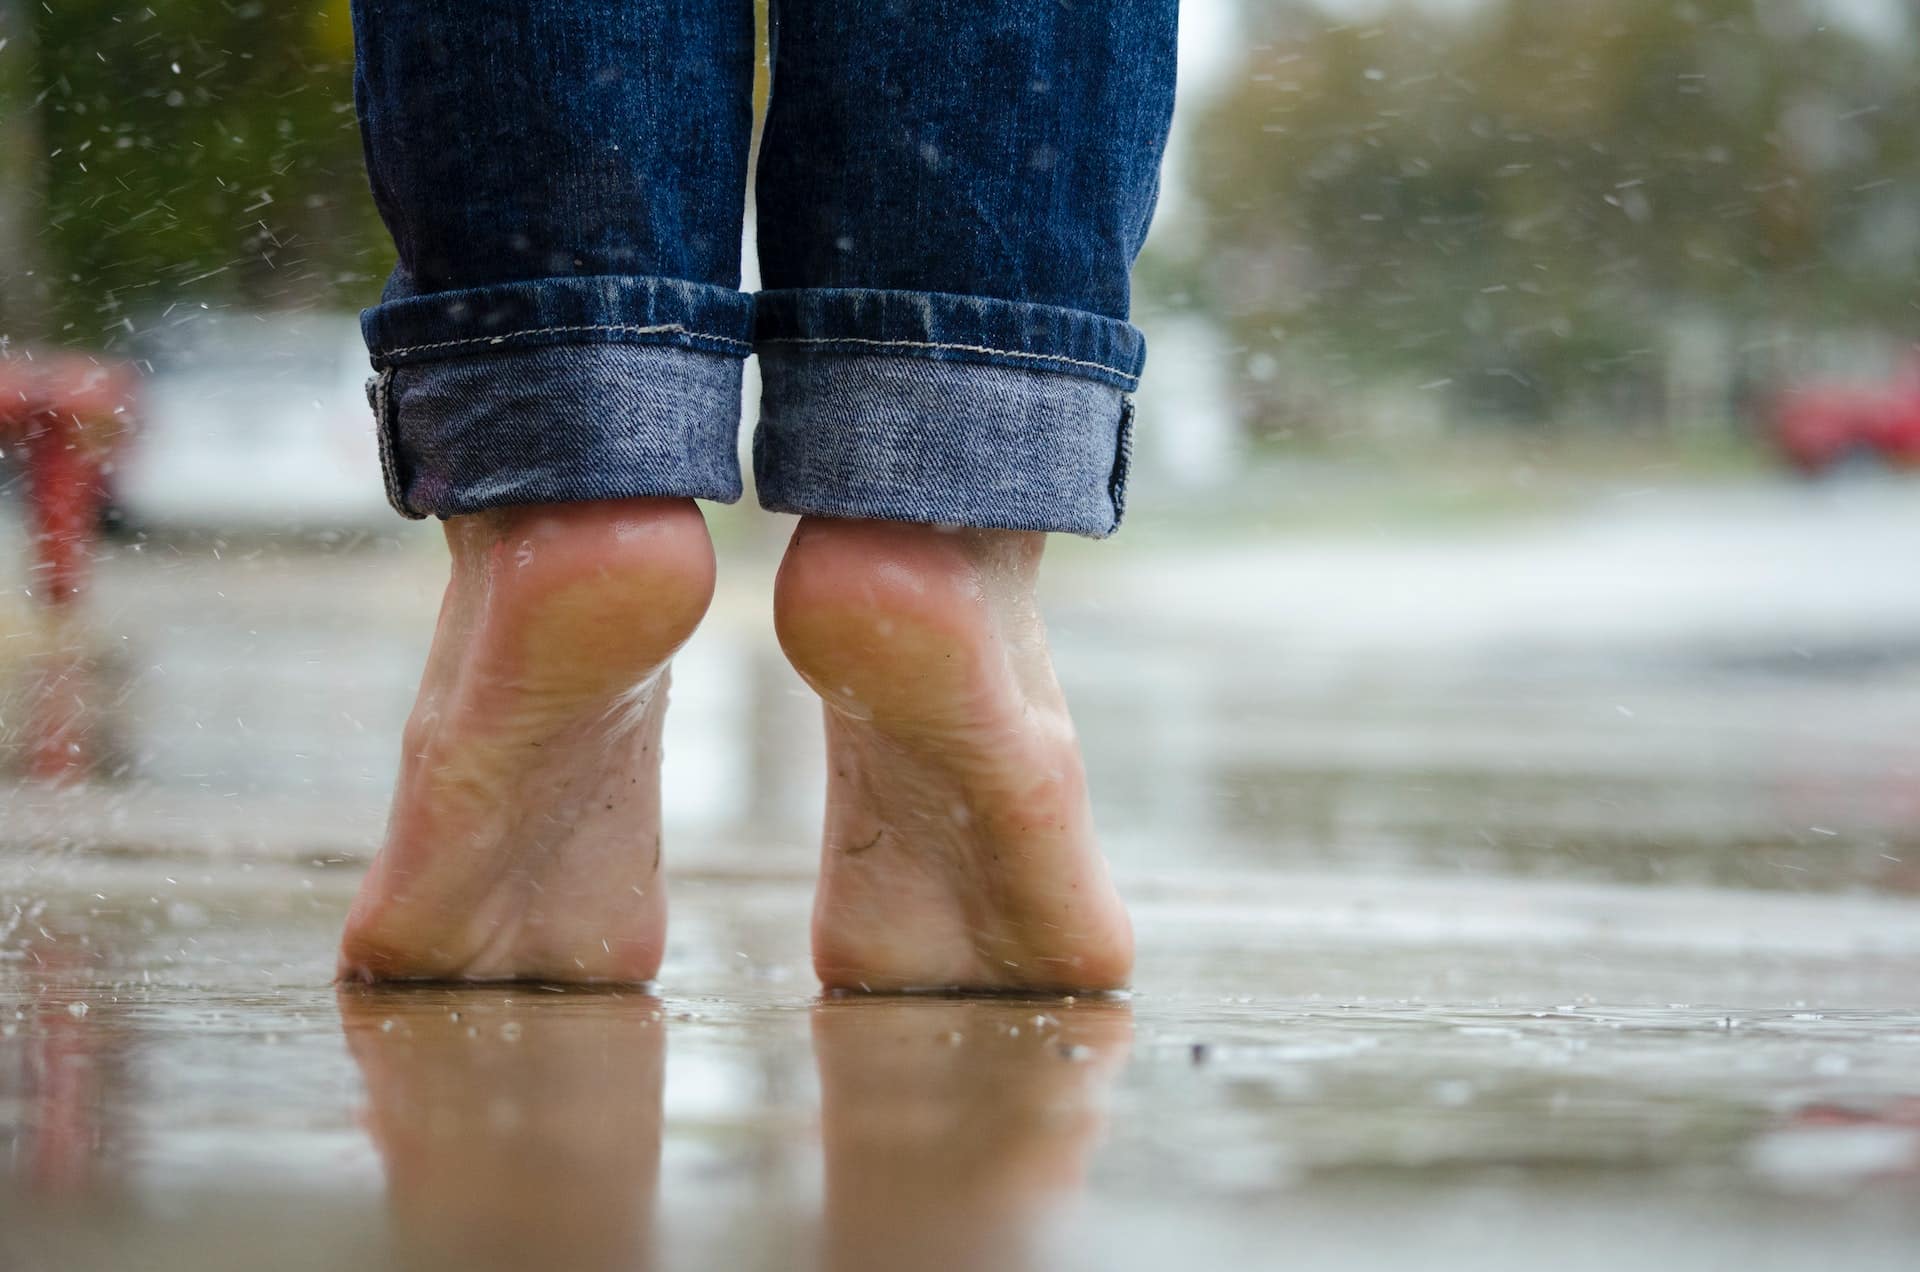 Nackte Füße die im Regen auf Zehenspitzen auf Asphalt stehen